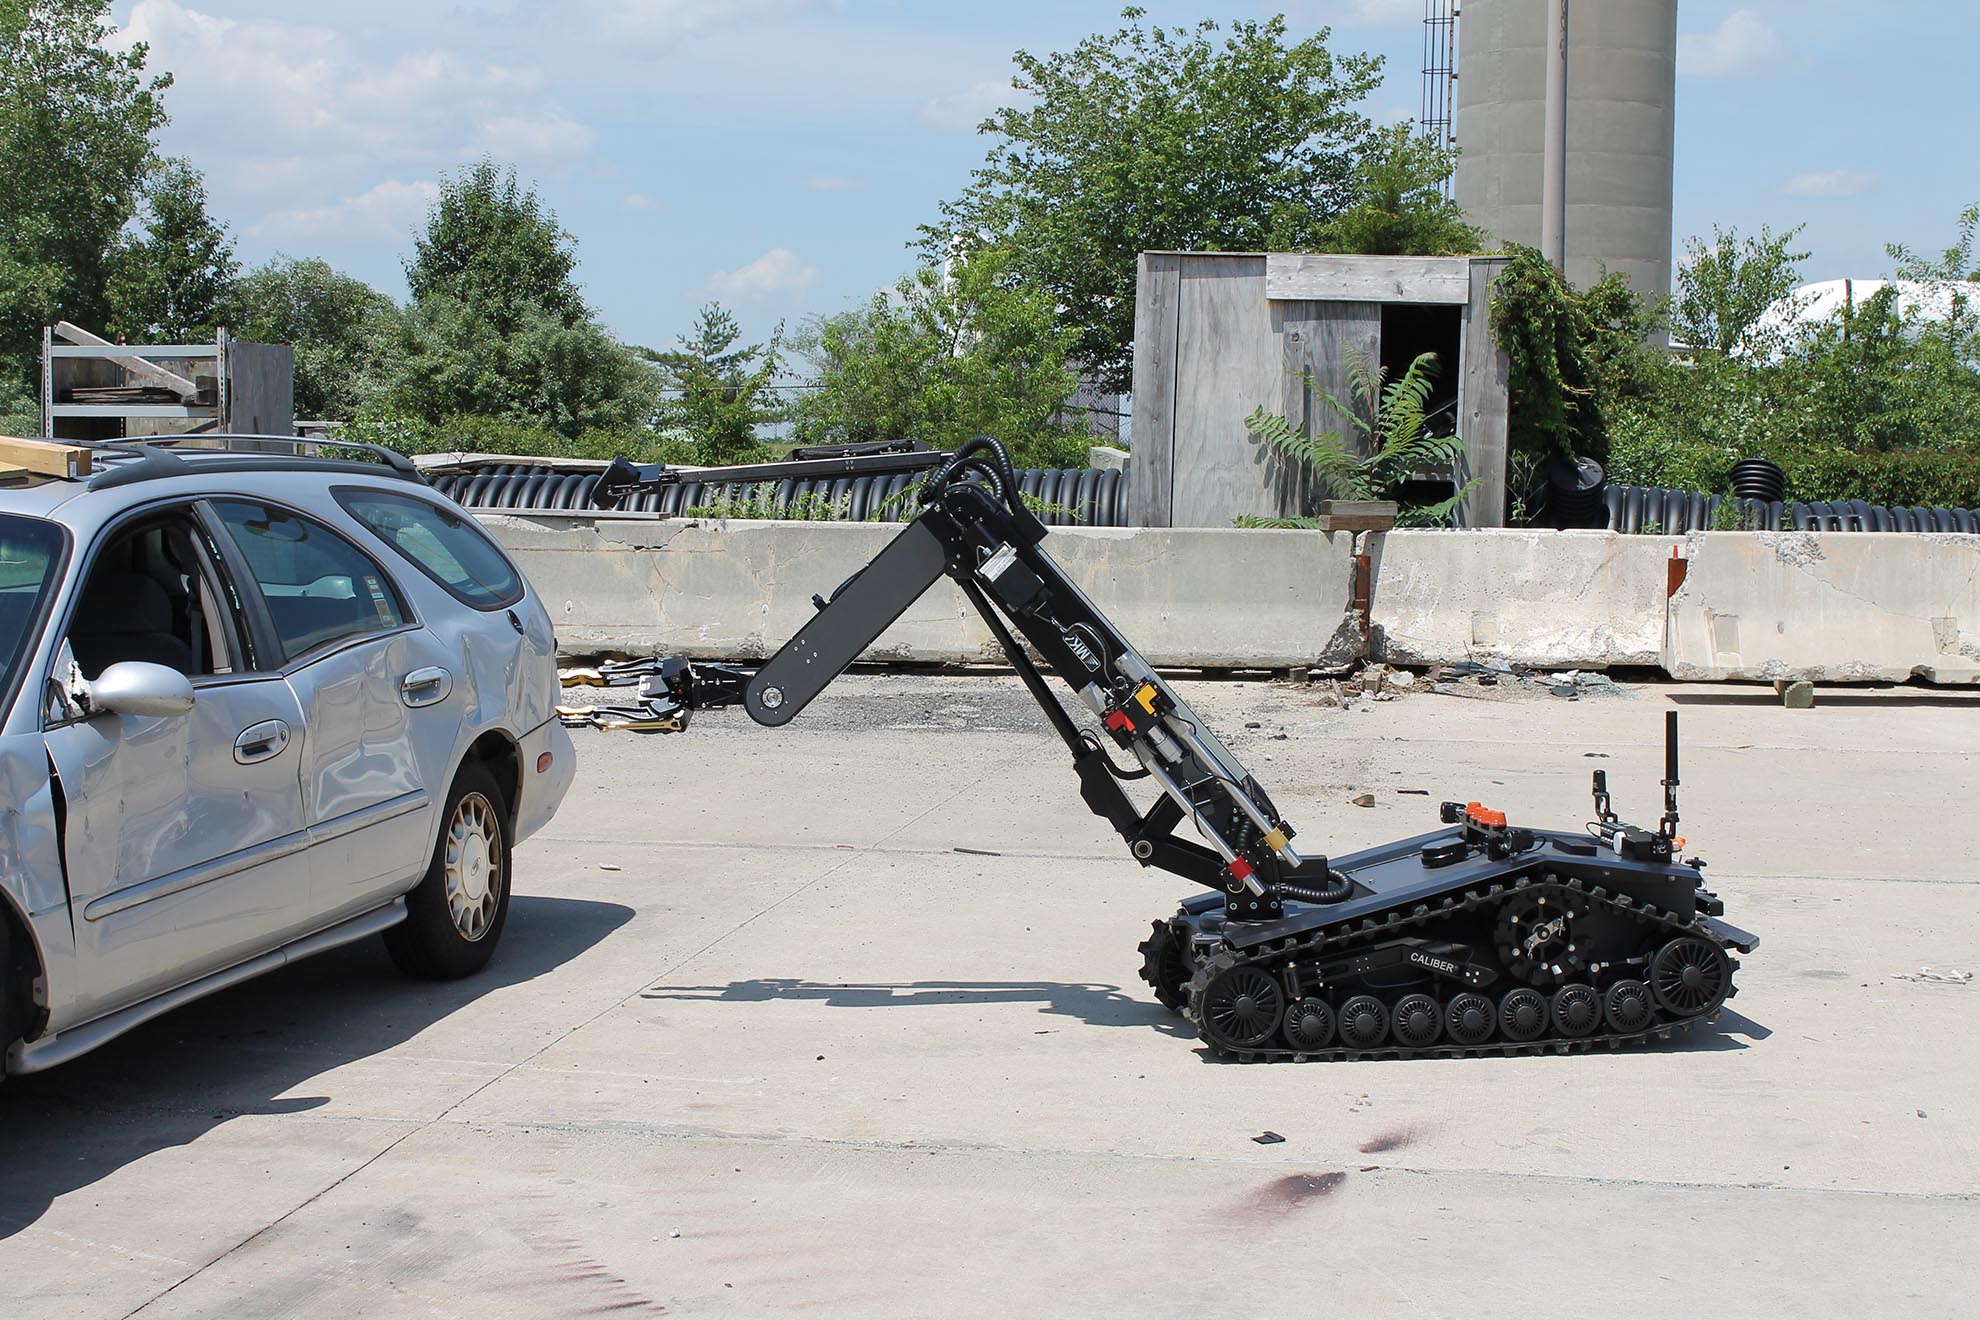 CALIBER® MK4 lvbied robot vehicle approach wide